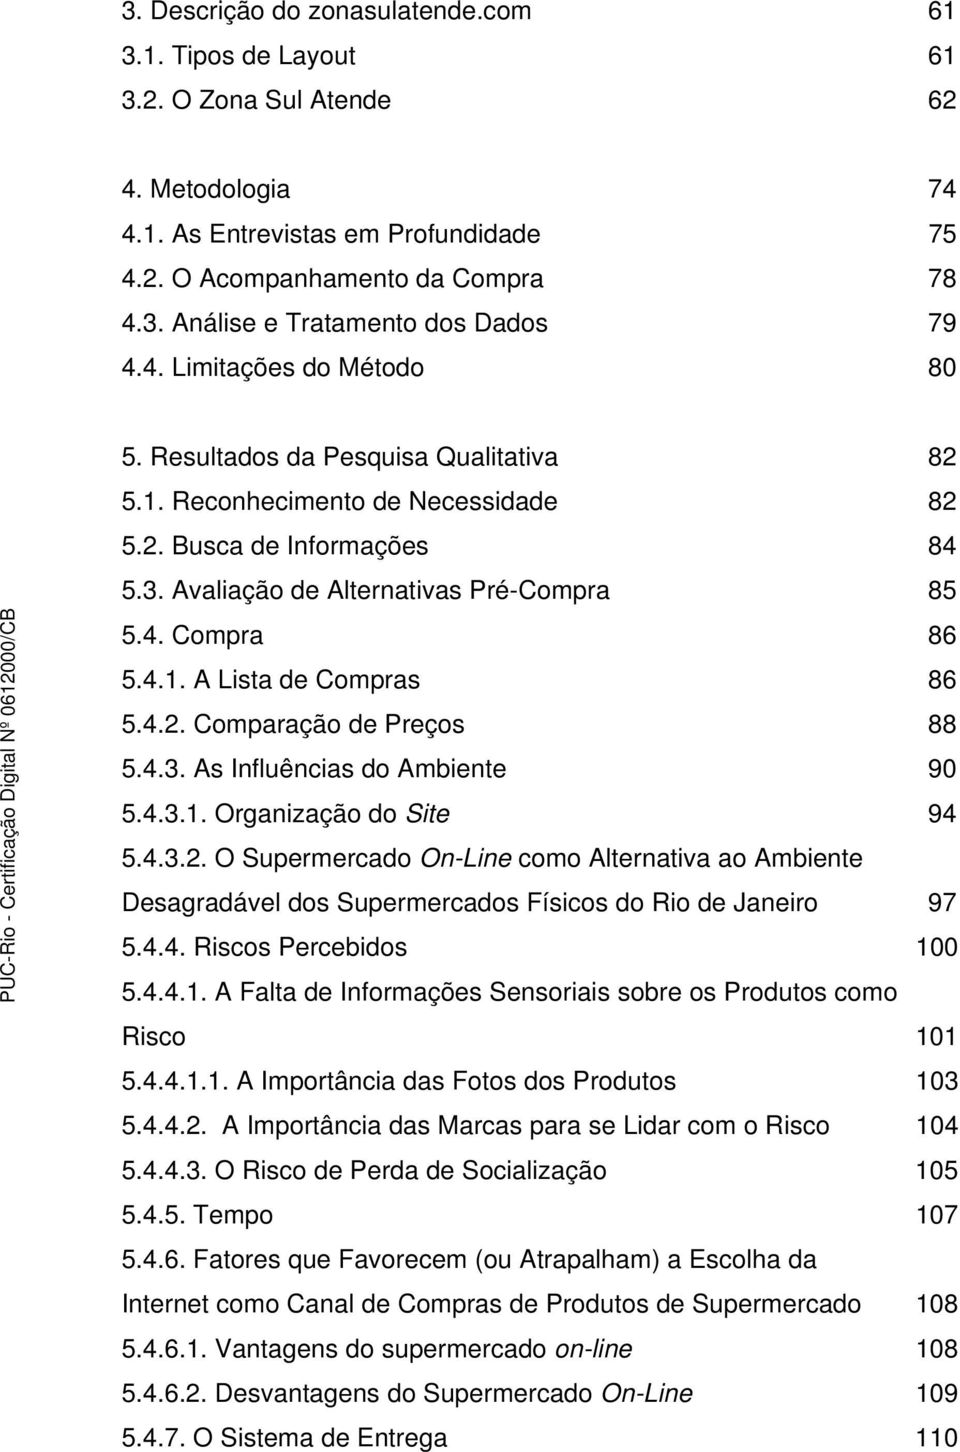 4.2. Comparação de Preços 88 5.4.3. As Influências do Ambiente 90 5.4.3.1. Organização do Site 94 5.4.3.2. O Supermercado On-Line como Alternativa ao Ambiente Desagradável dos Supermercados Físicos do Rio de Janeiro 97 5.